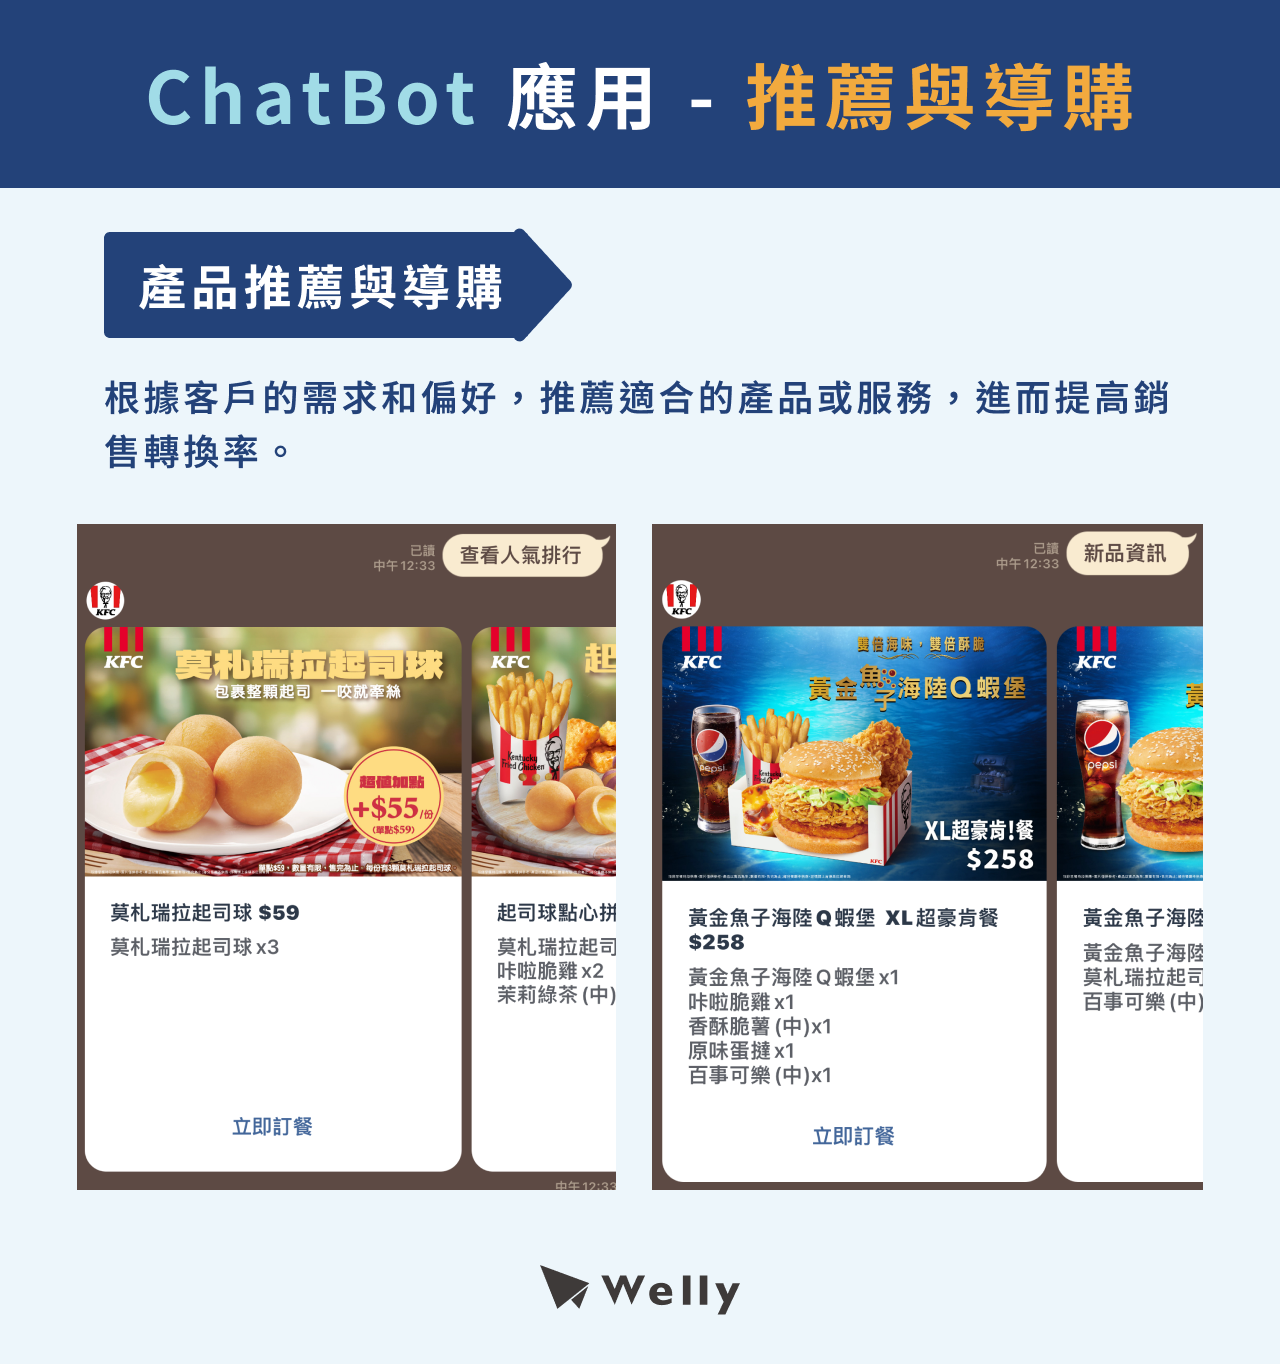 ChatBot用途-產品推薦與導購